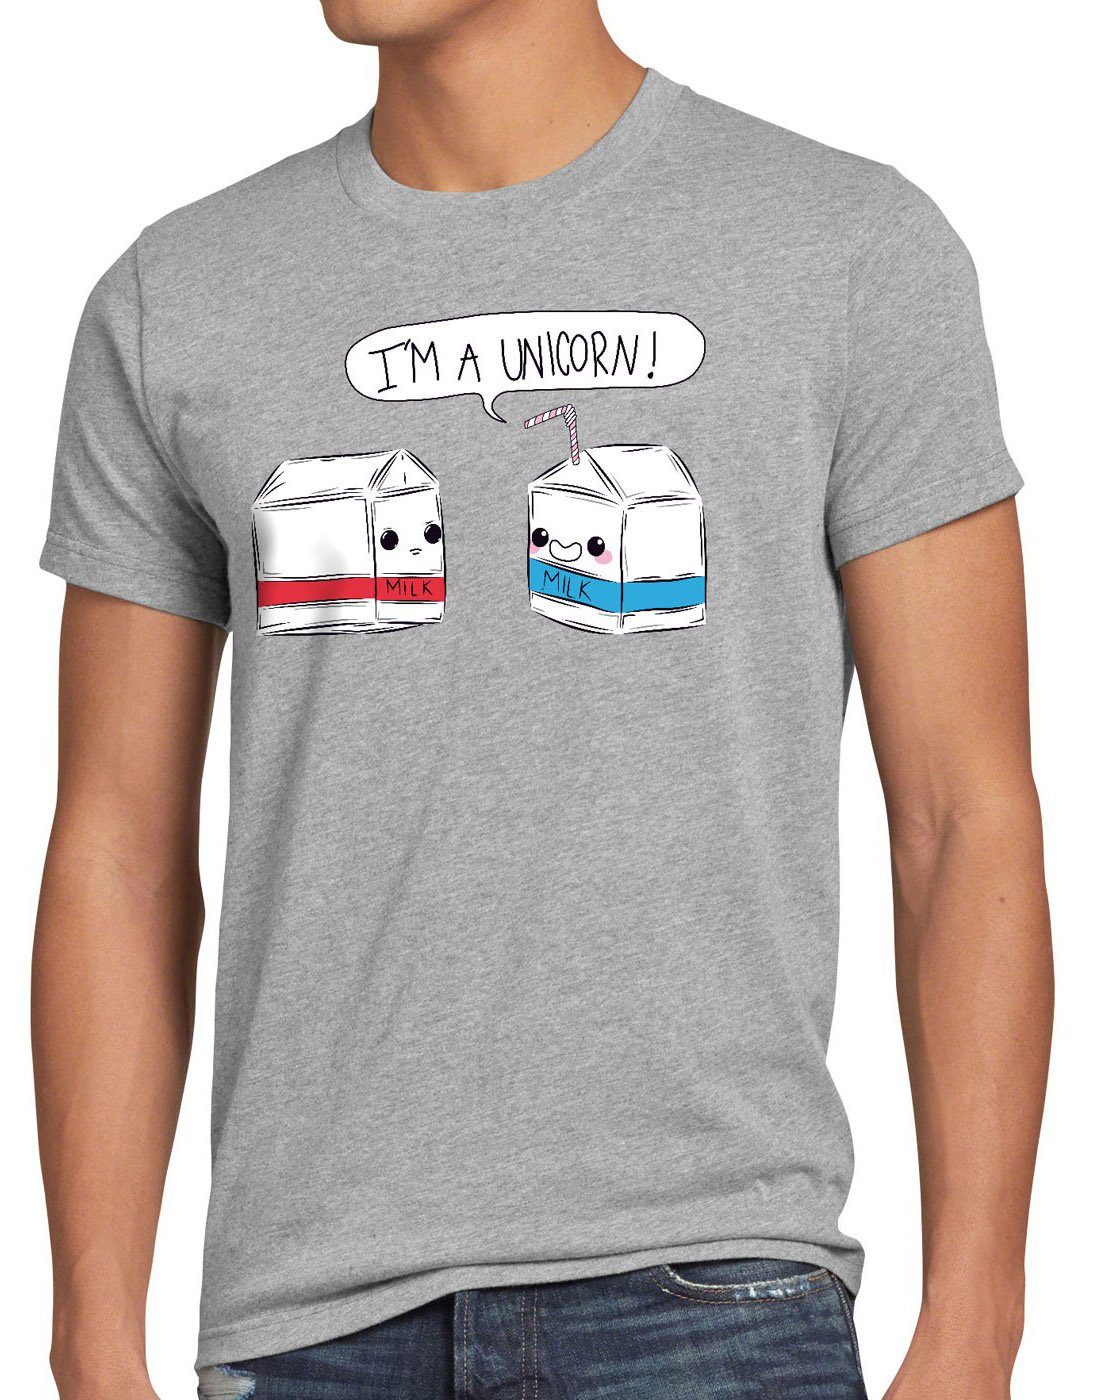 Herren Milk Print-Shirt style3 Unicorn T-Shirt meliert a Spruch grau Milchtüte Funshirt I Einhorn Milch am Fun